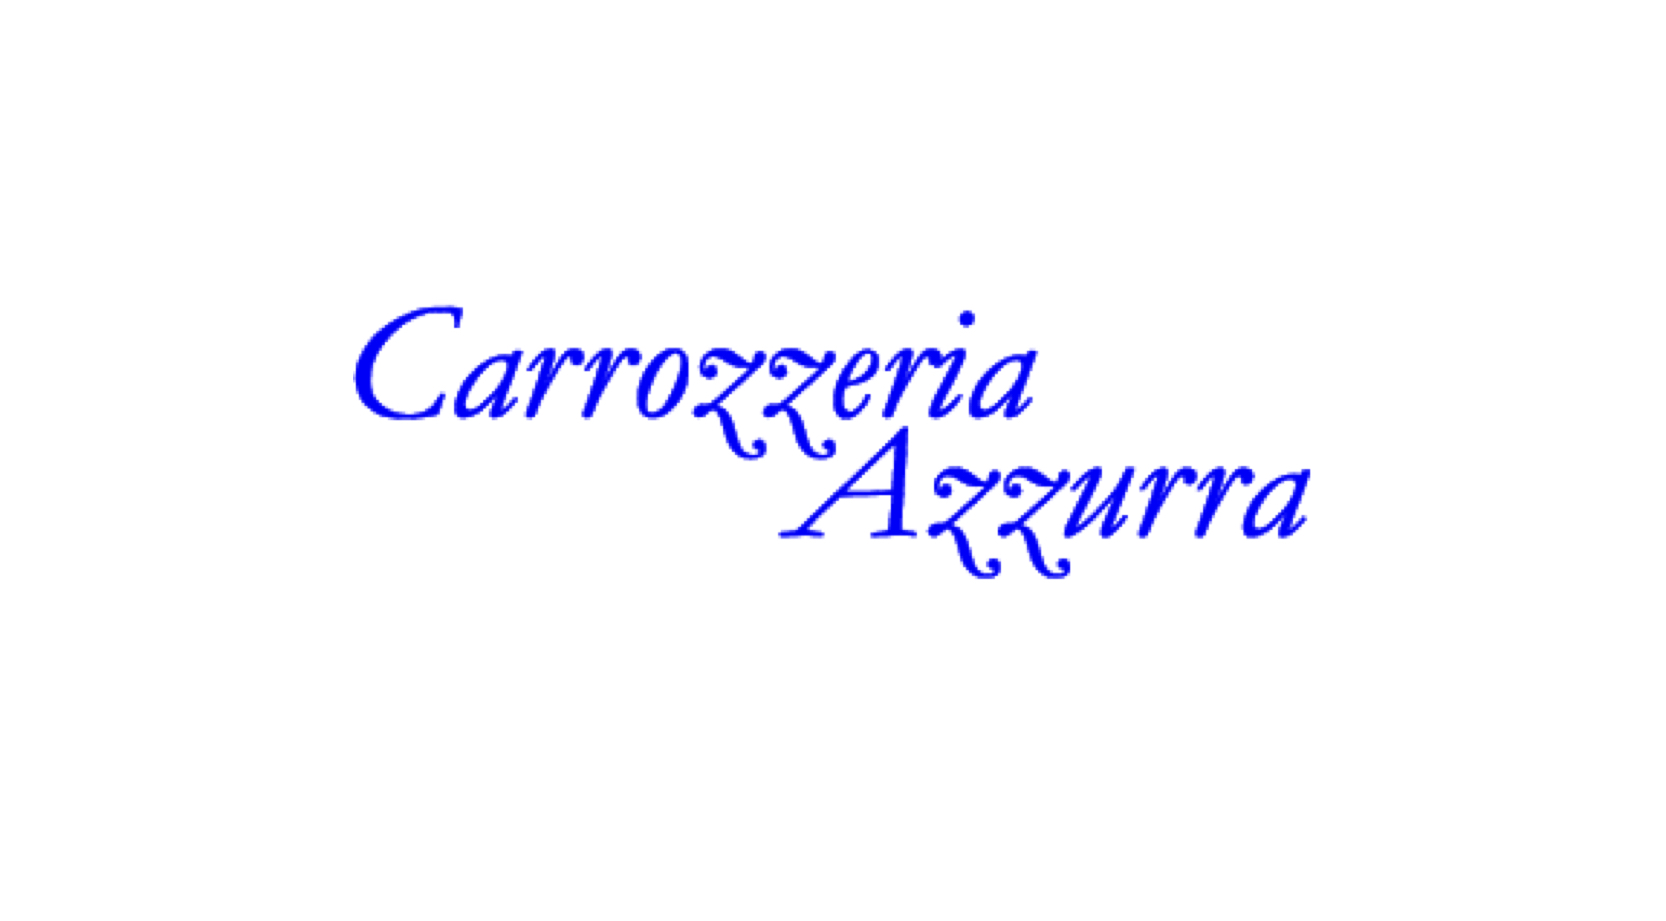 Logo Carrozzeria azzurra